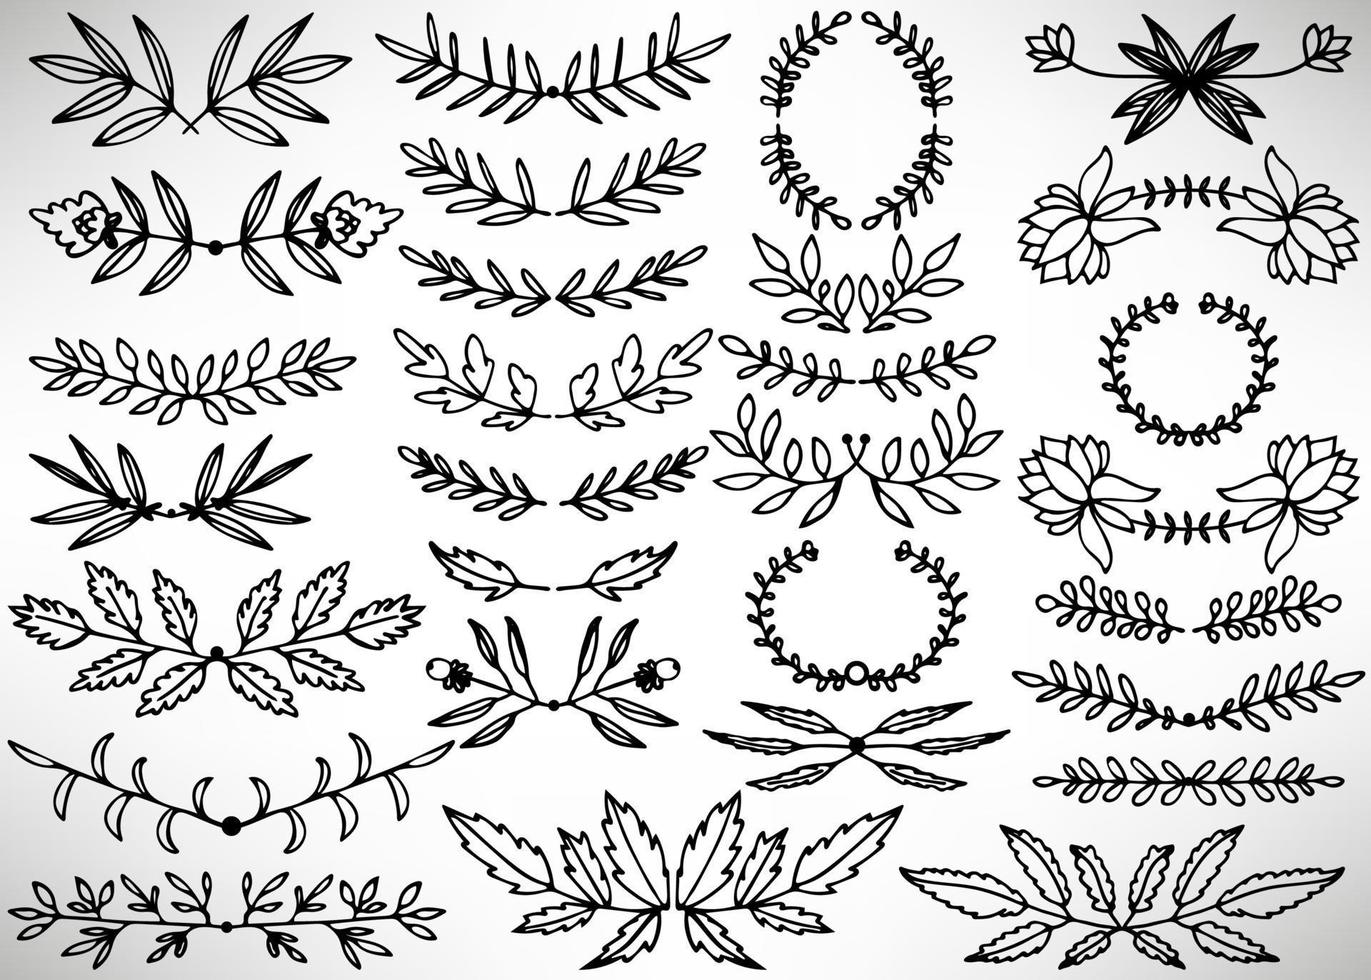 gran conjunto floral de divisores dibujados a mano negra, coronas de laurel, hojas, flores, ramas aisladas en blanco. colección de elementos florecientes para el diseño. vector